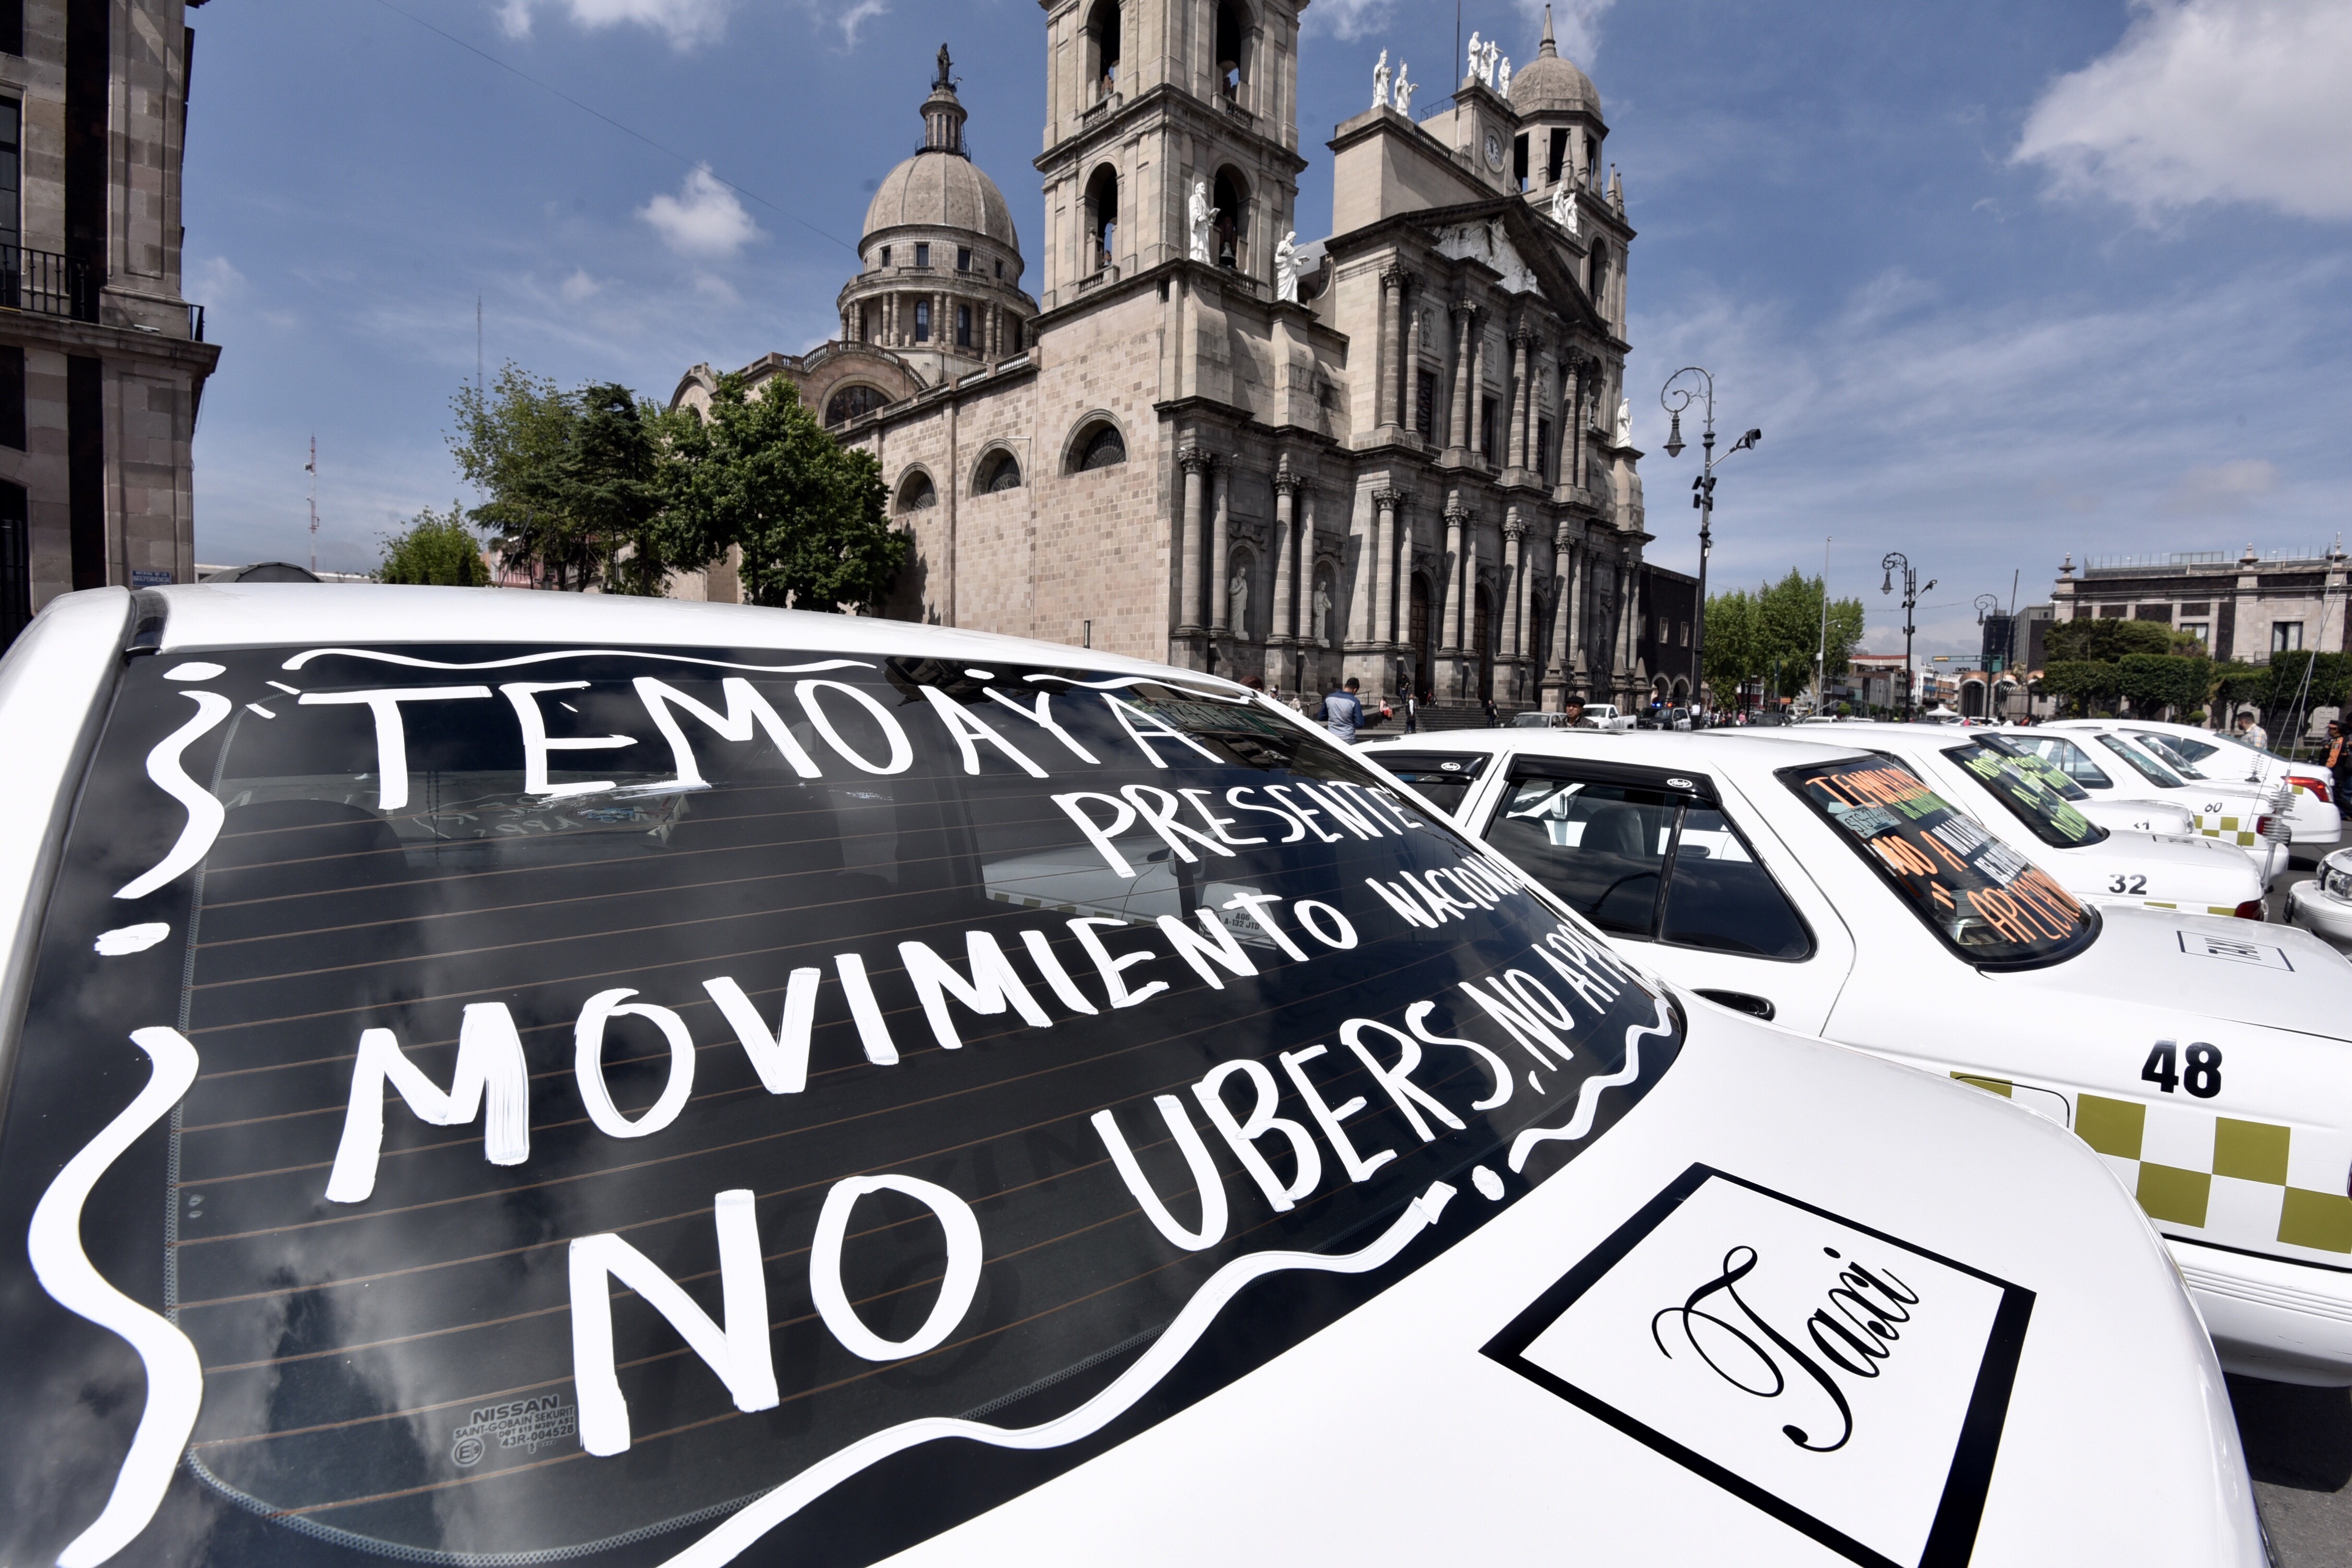 Here we go again: Taxistas harán marcha el próximo lunes 7 de octubre en la CDMX